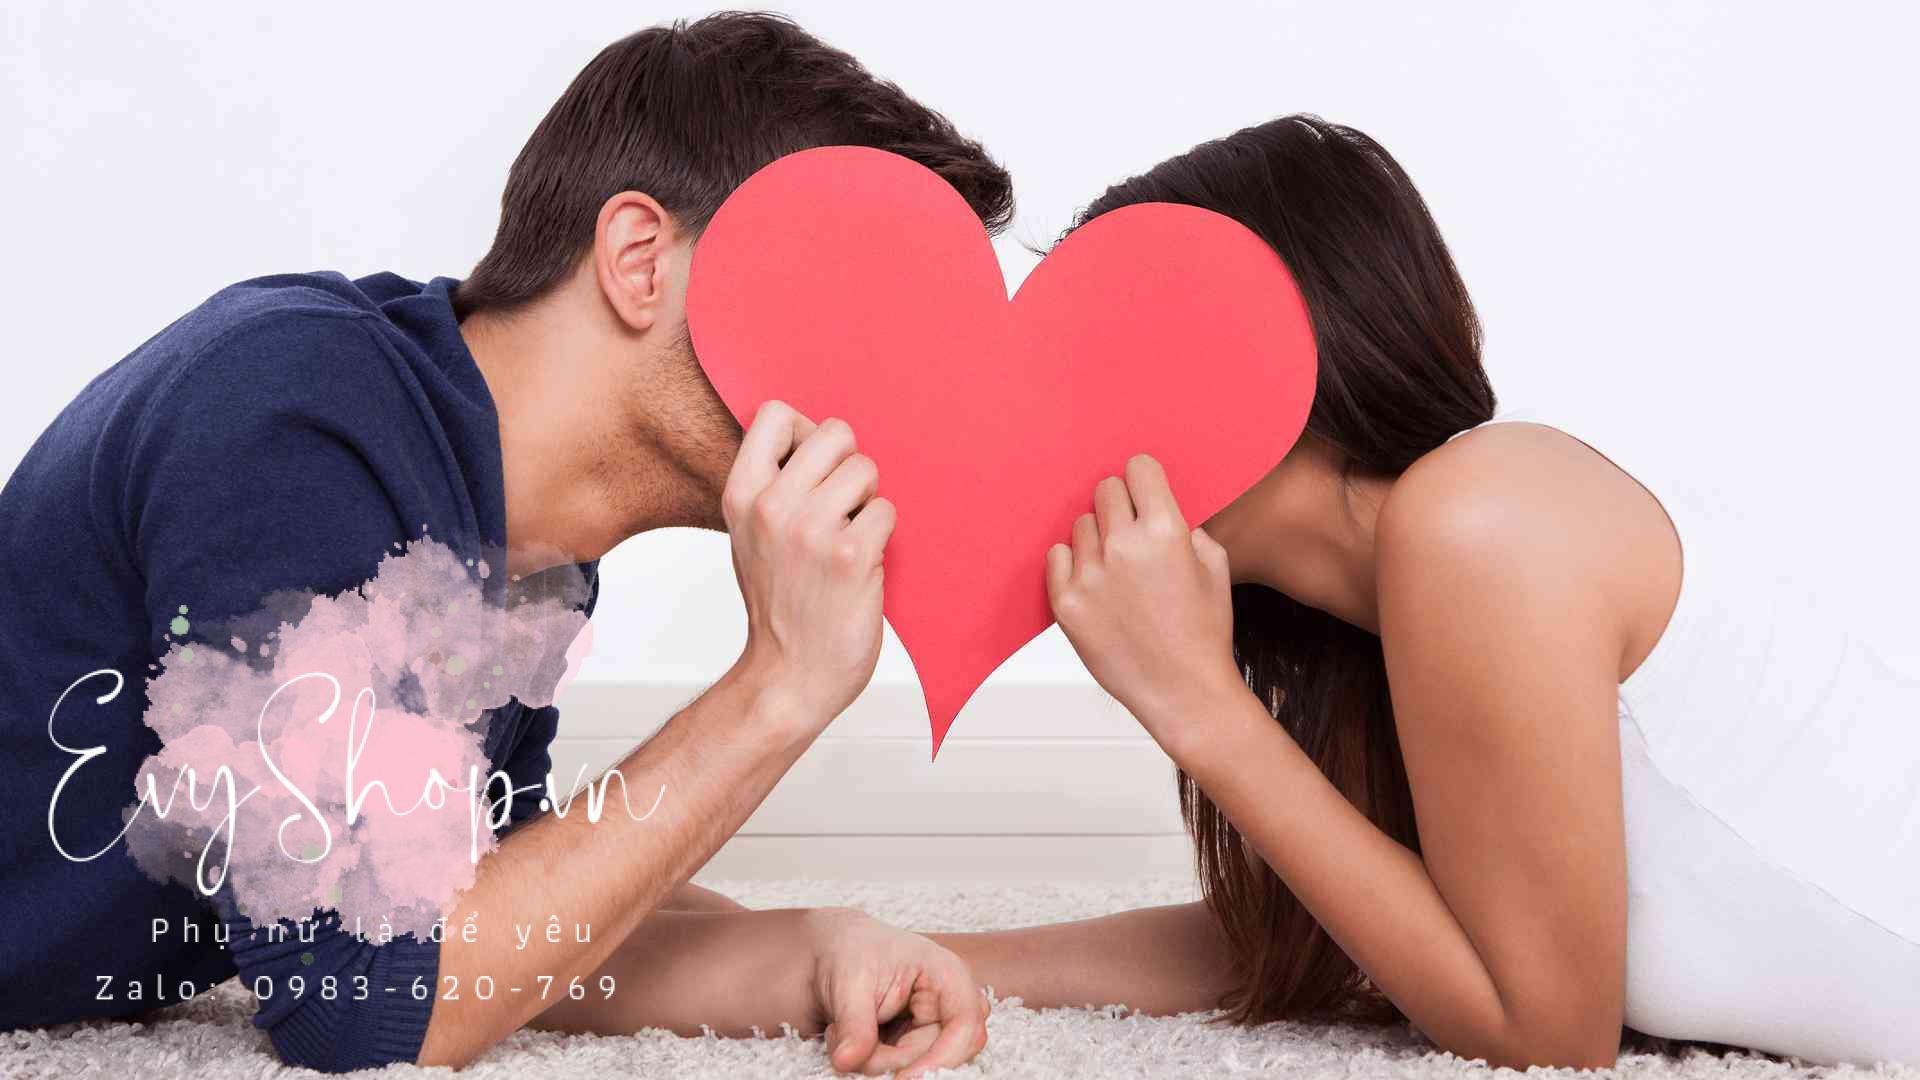 Tình dục không chỉ thỏa mãn phần thể xác mà sẽ đem lại lợi ích cho sức khỏe nếu bạn có đời sống tình dục an toàn, đều đặn và khoa học.